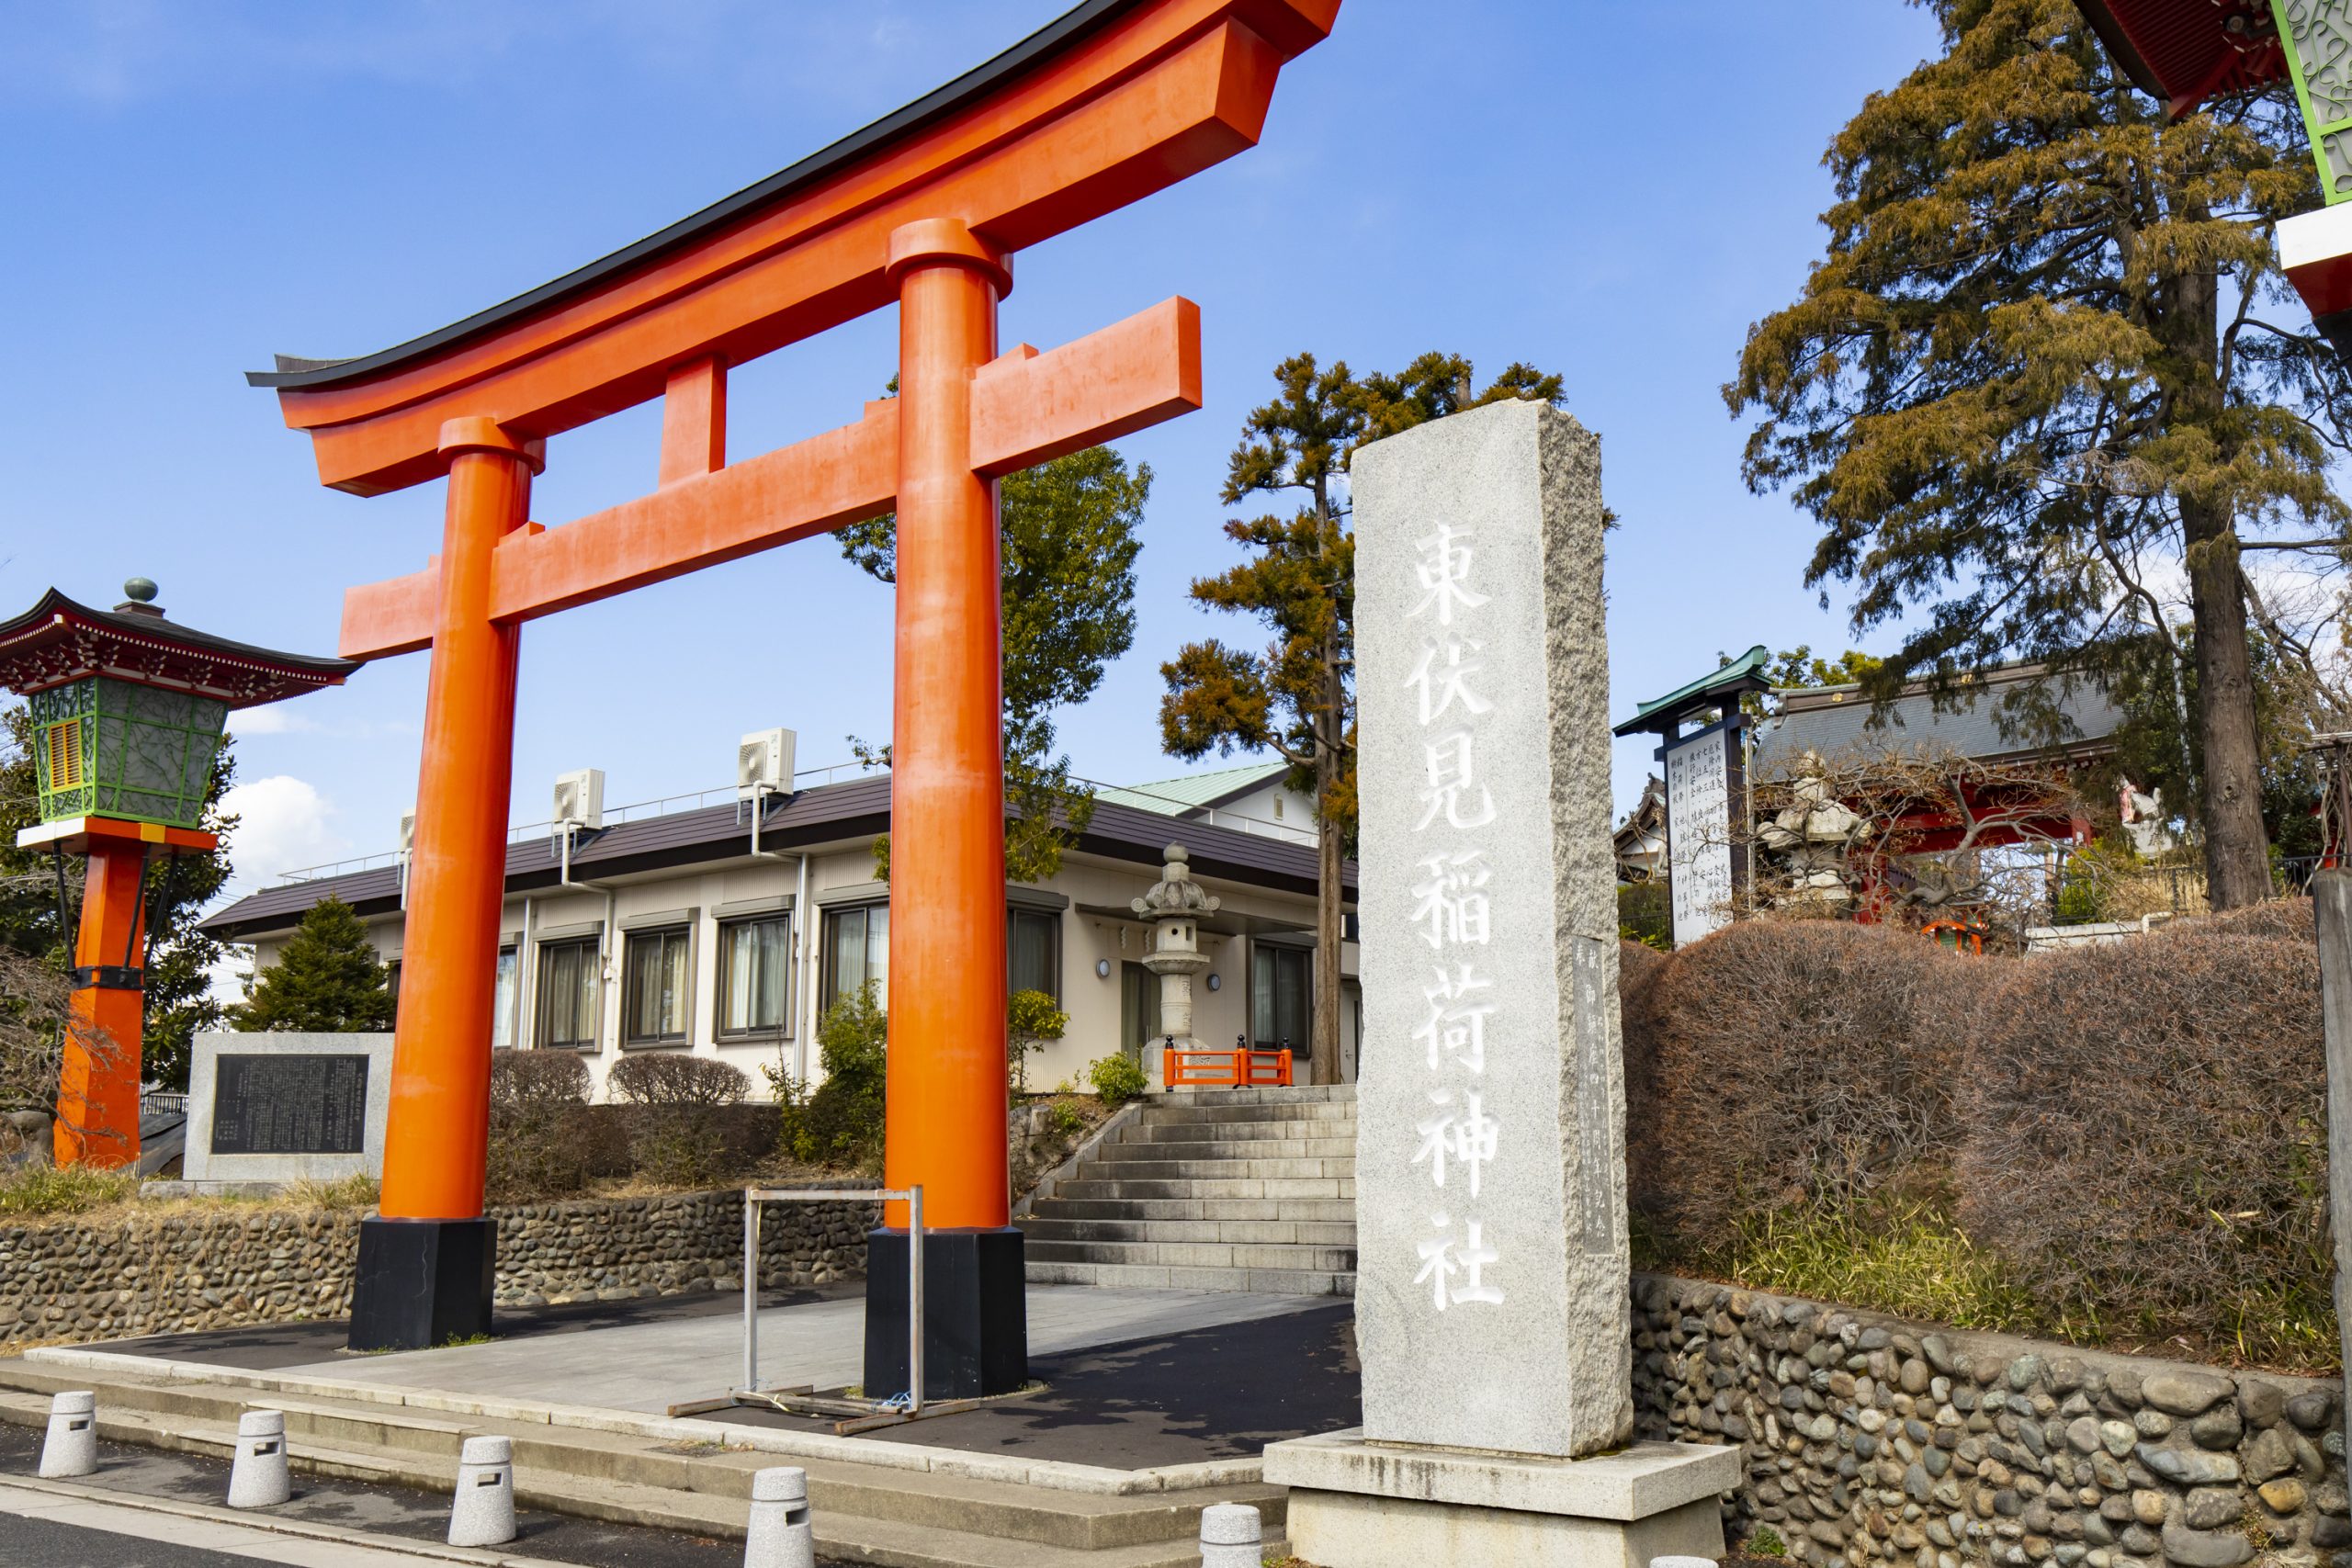 東伏見で稲荷神社と街をめぐる旅 京都館 京都に暮らす人たちと愛する人たちが京都を伝えるwebメディア